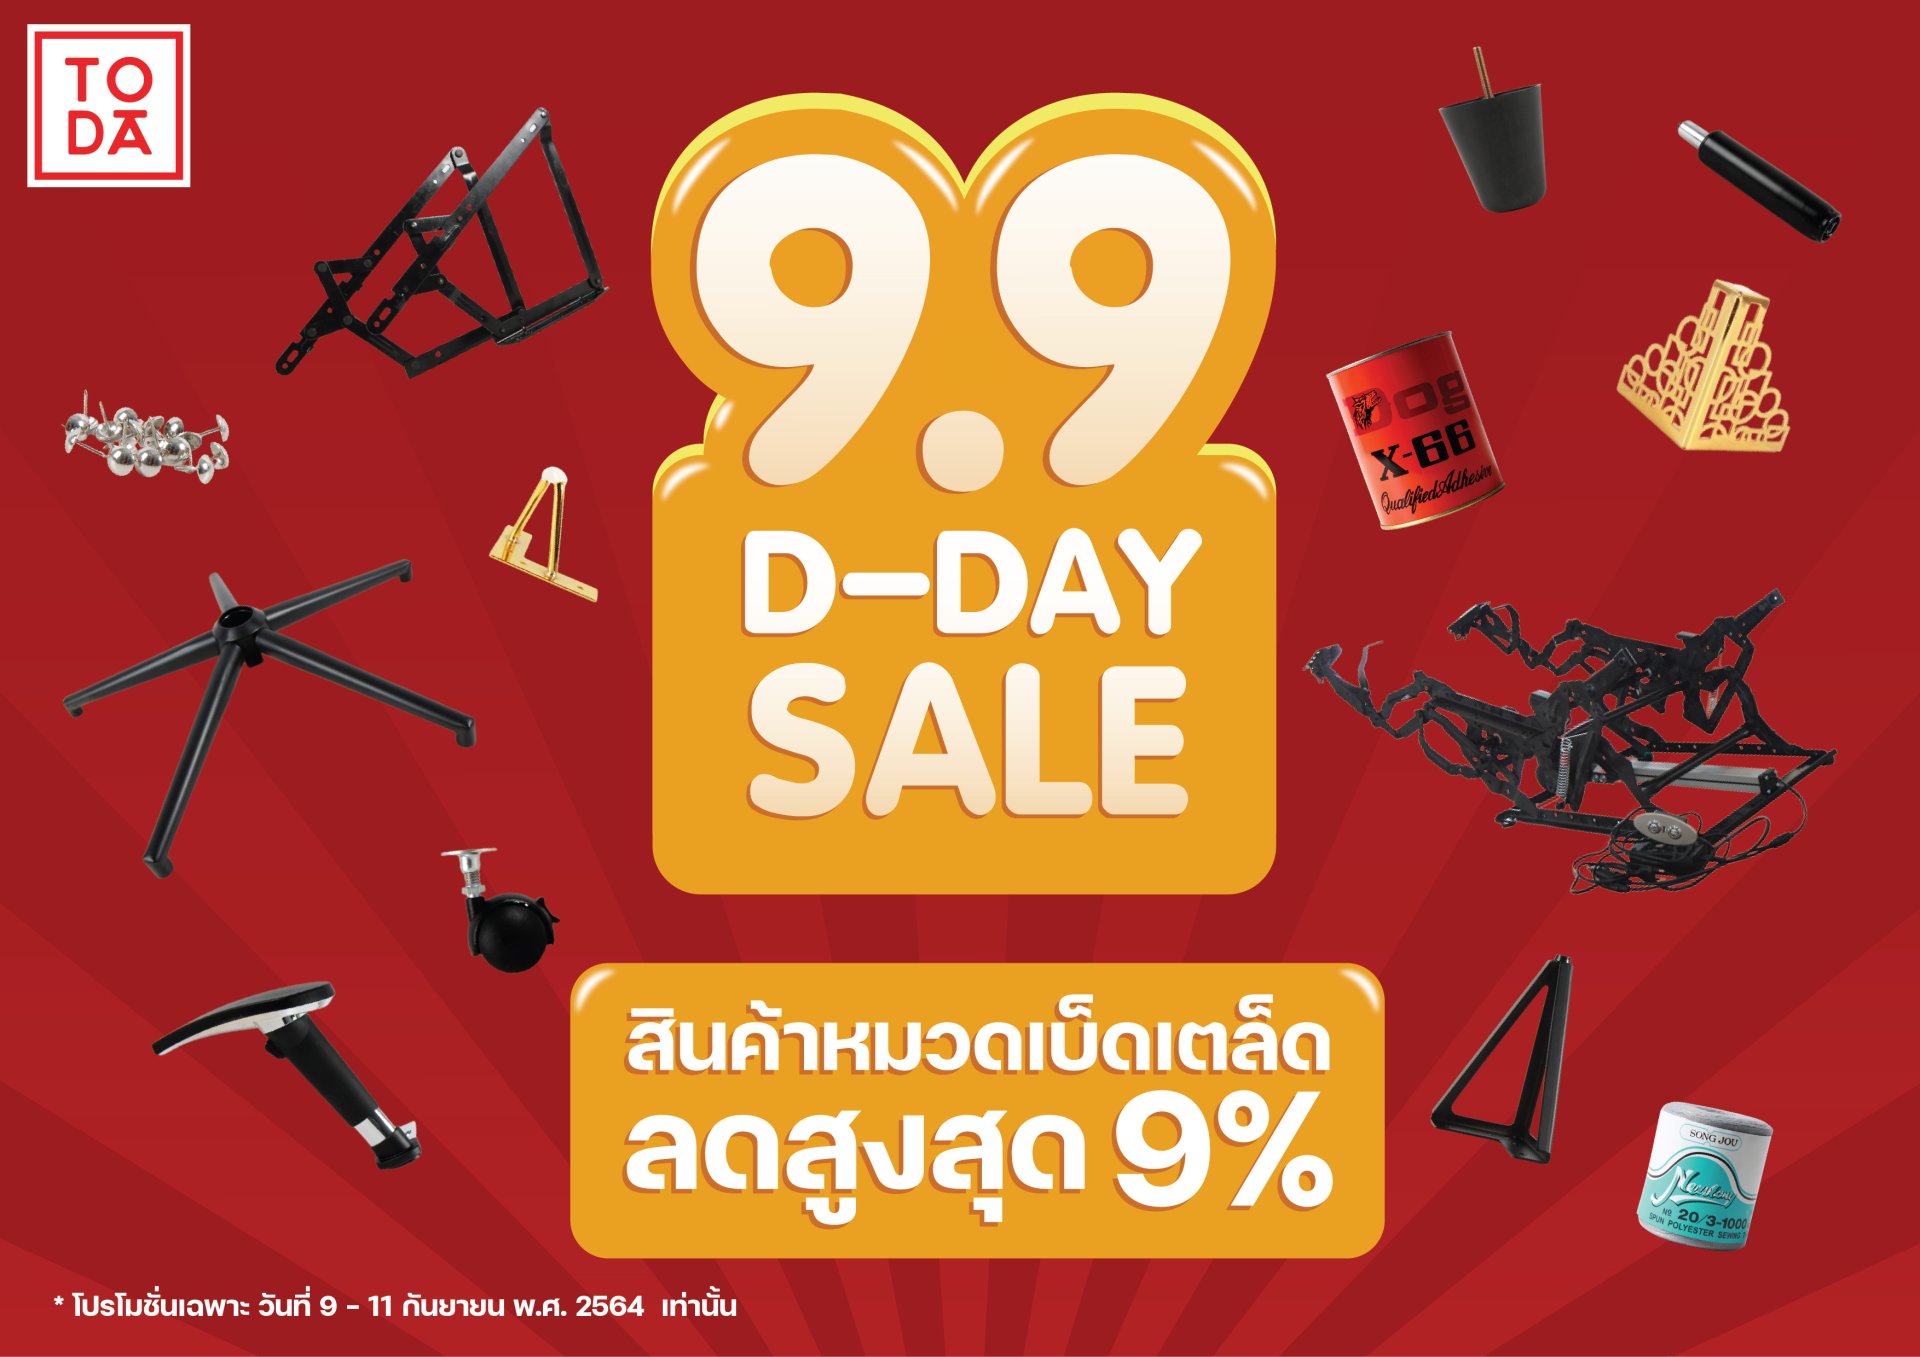 TODA 9.9 D-DAY SALE สินค้าหมวดเบ็ดเตล็ด ลดสูงสุด 9%